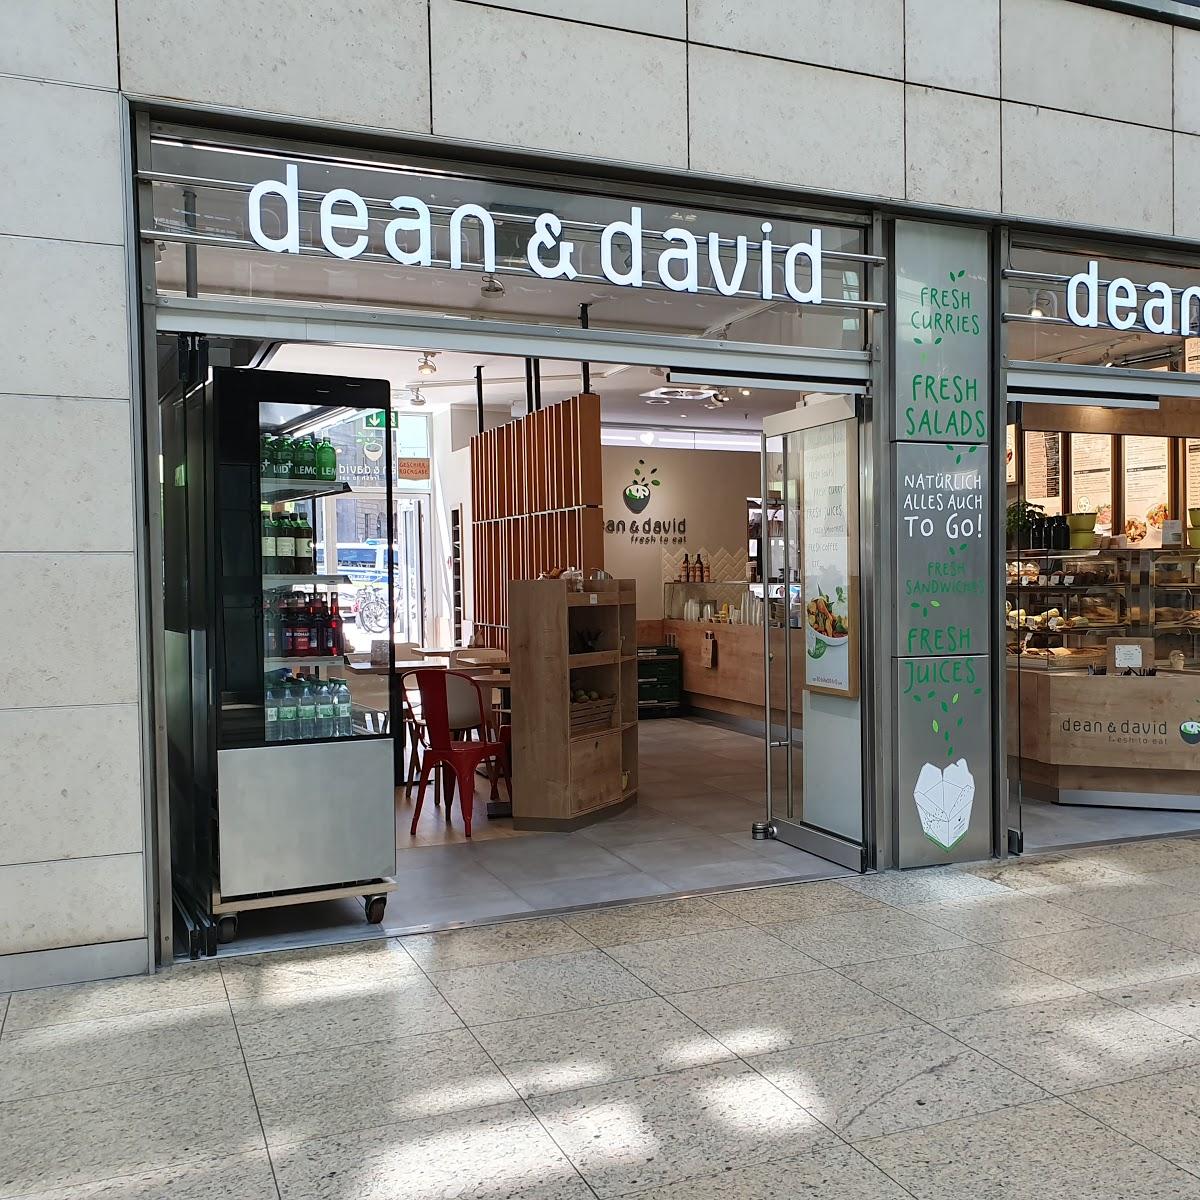 Restaurant "dean&david" in Köln